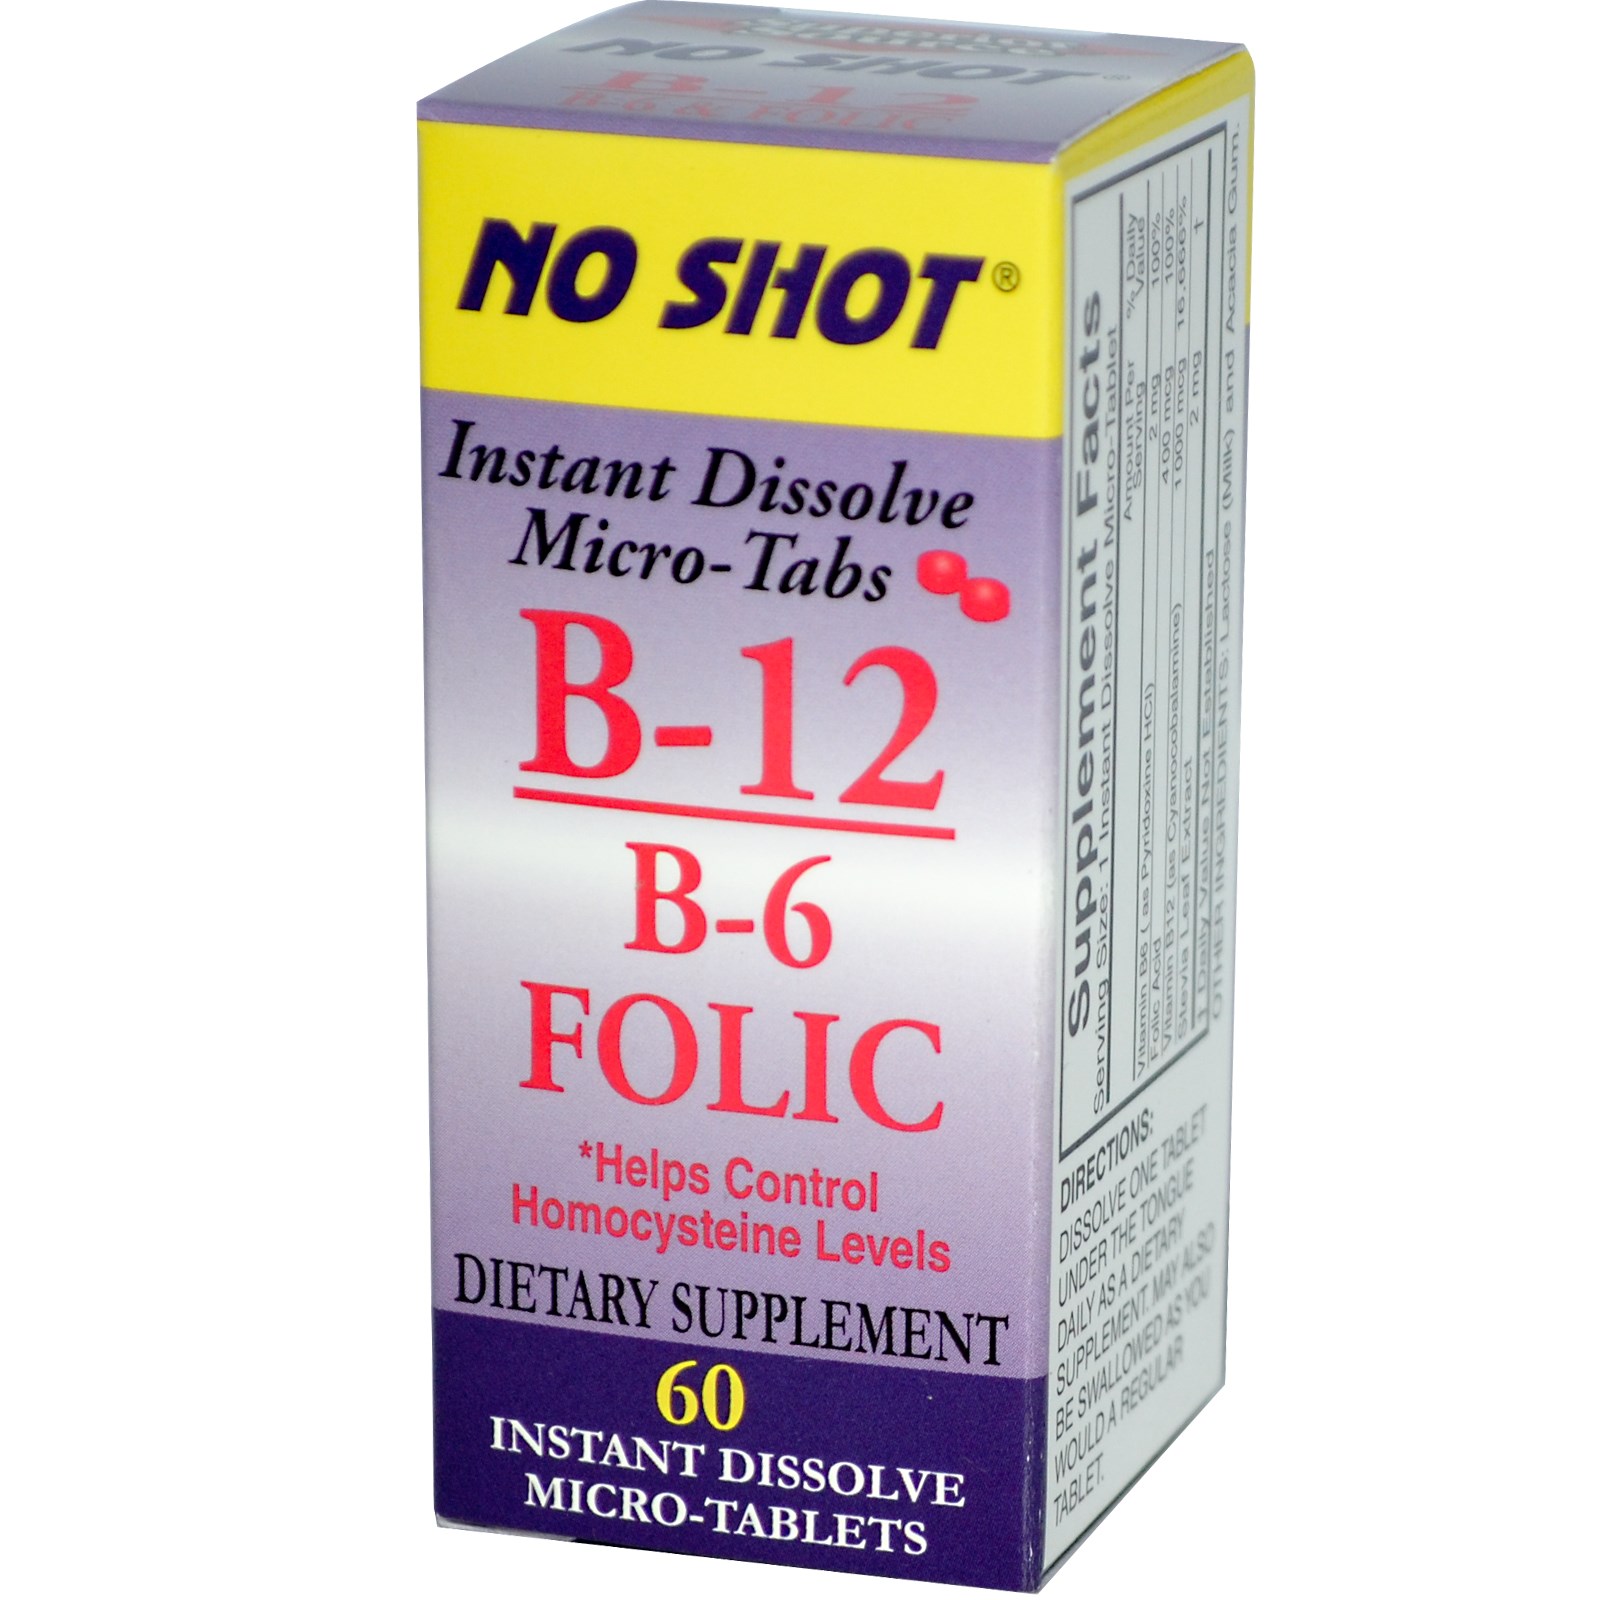 Фолиевая 800. Таблетки витамин b12 фолиевая кислота. B-6 B-12 folic acid (б-6 б-12 фоливая кислота) 60 леденцов (Kal). B6 b12. Витамины с MG b6 b12.